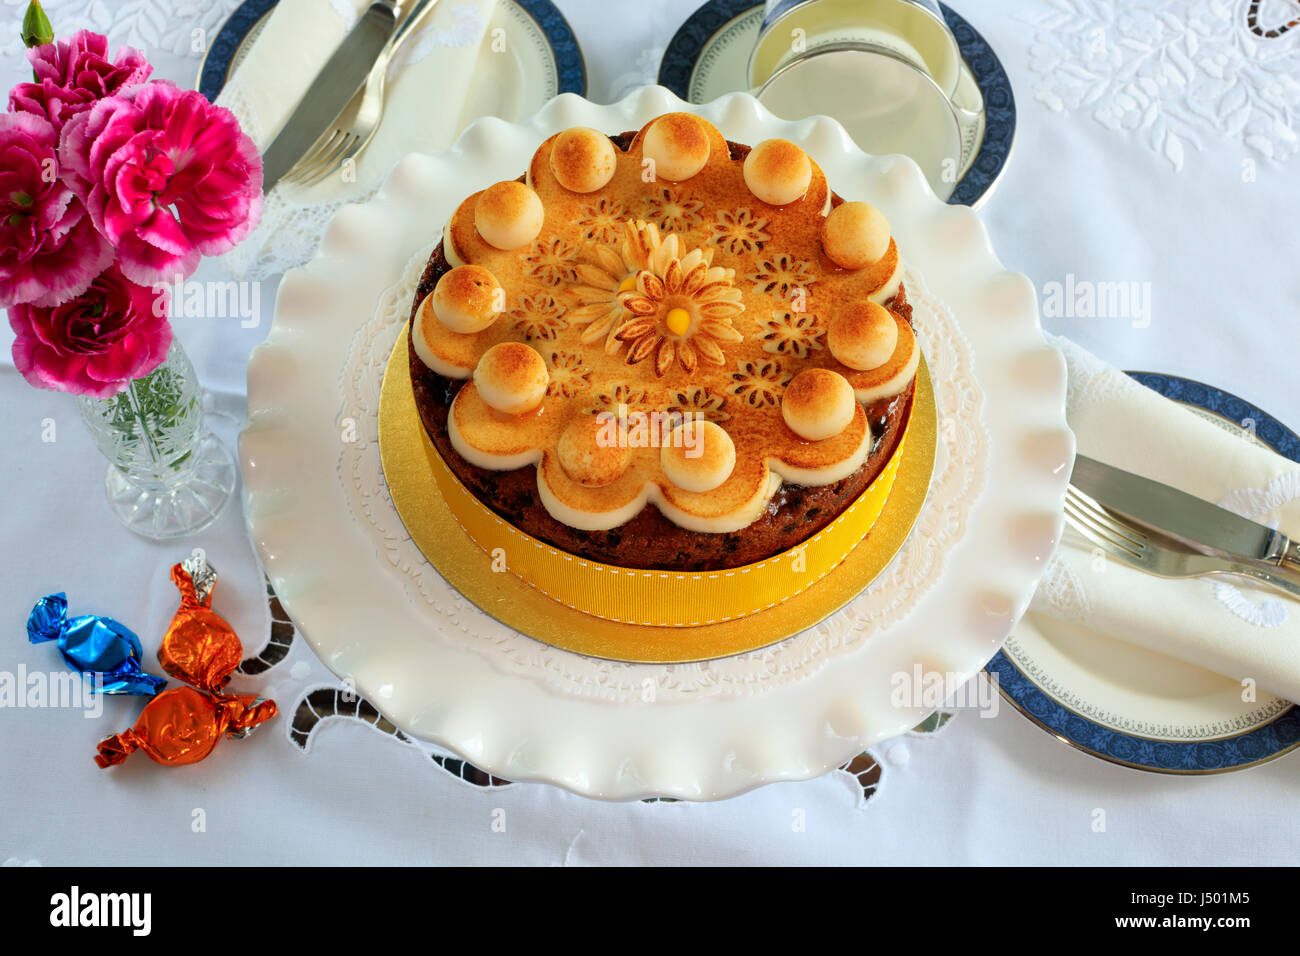 Simnel cake - gâteau aux fruits traditionnel de Pâques décorés de massepain sur un set de table pour le thé. Banque D'Images